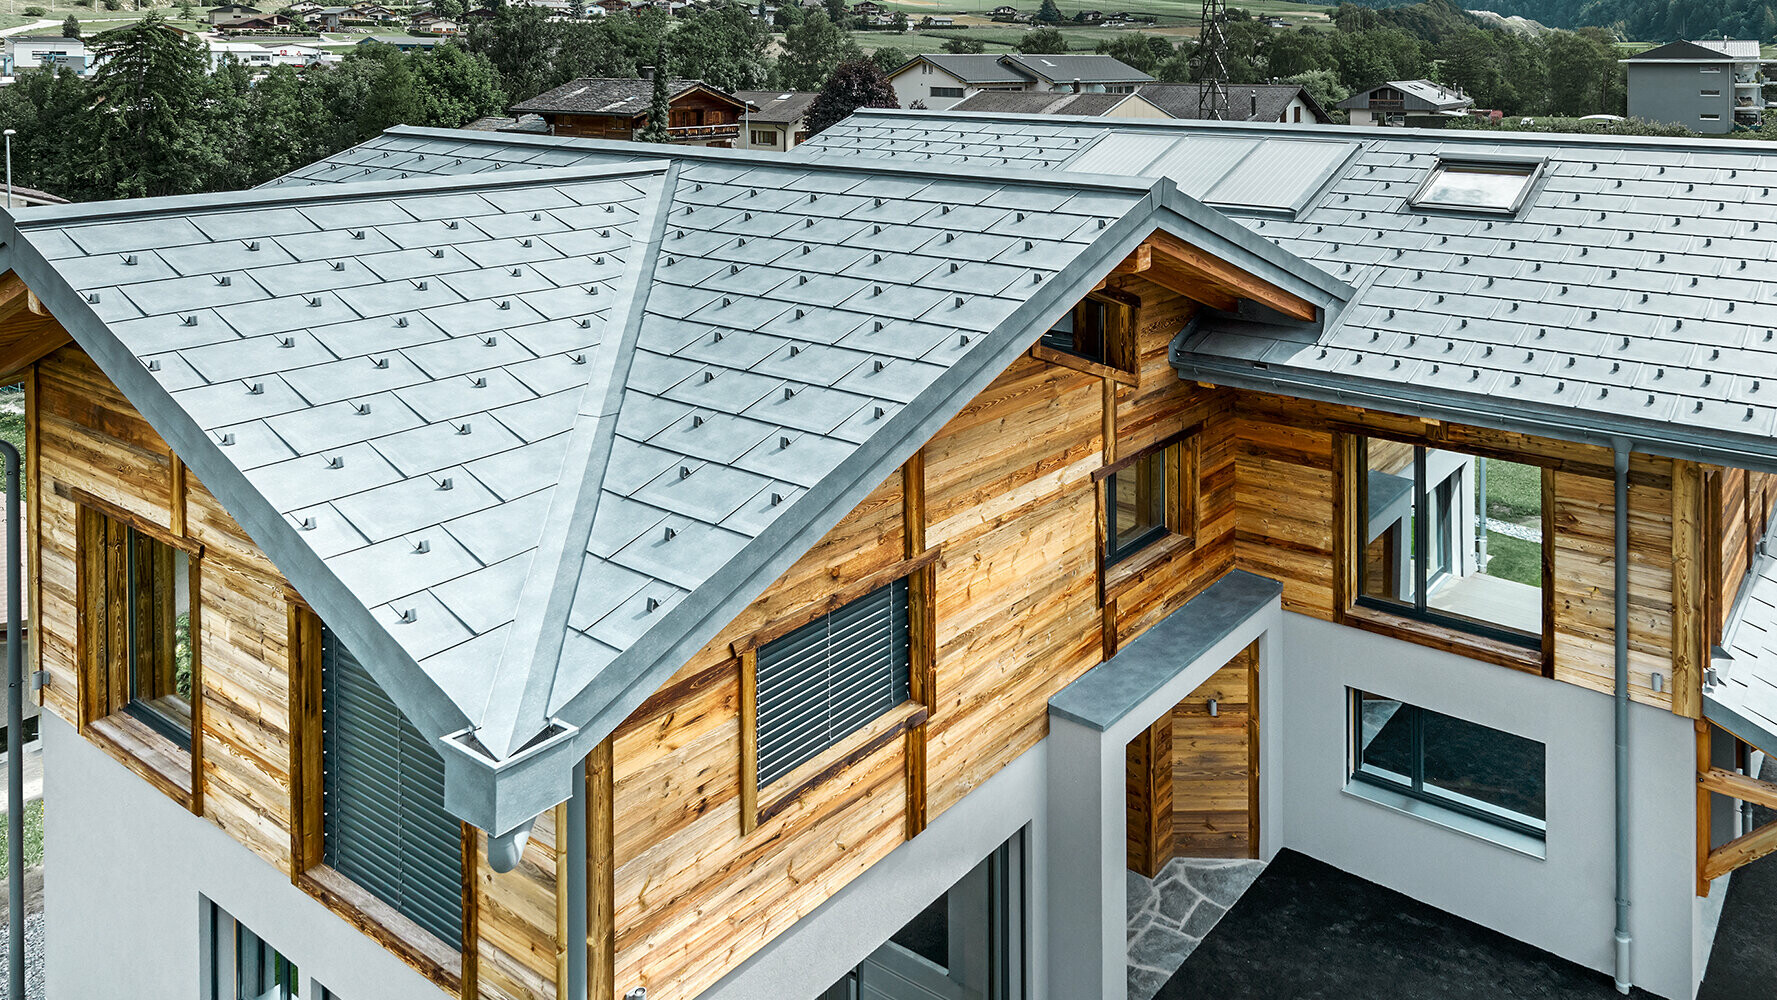  Chalet con copertura del tetto PREFA in P.10 grigio pietra in combinazione con una facciata in legno